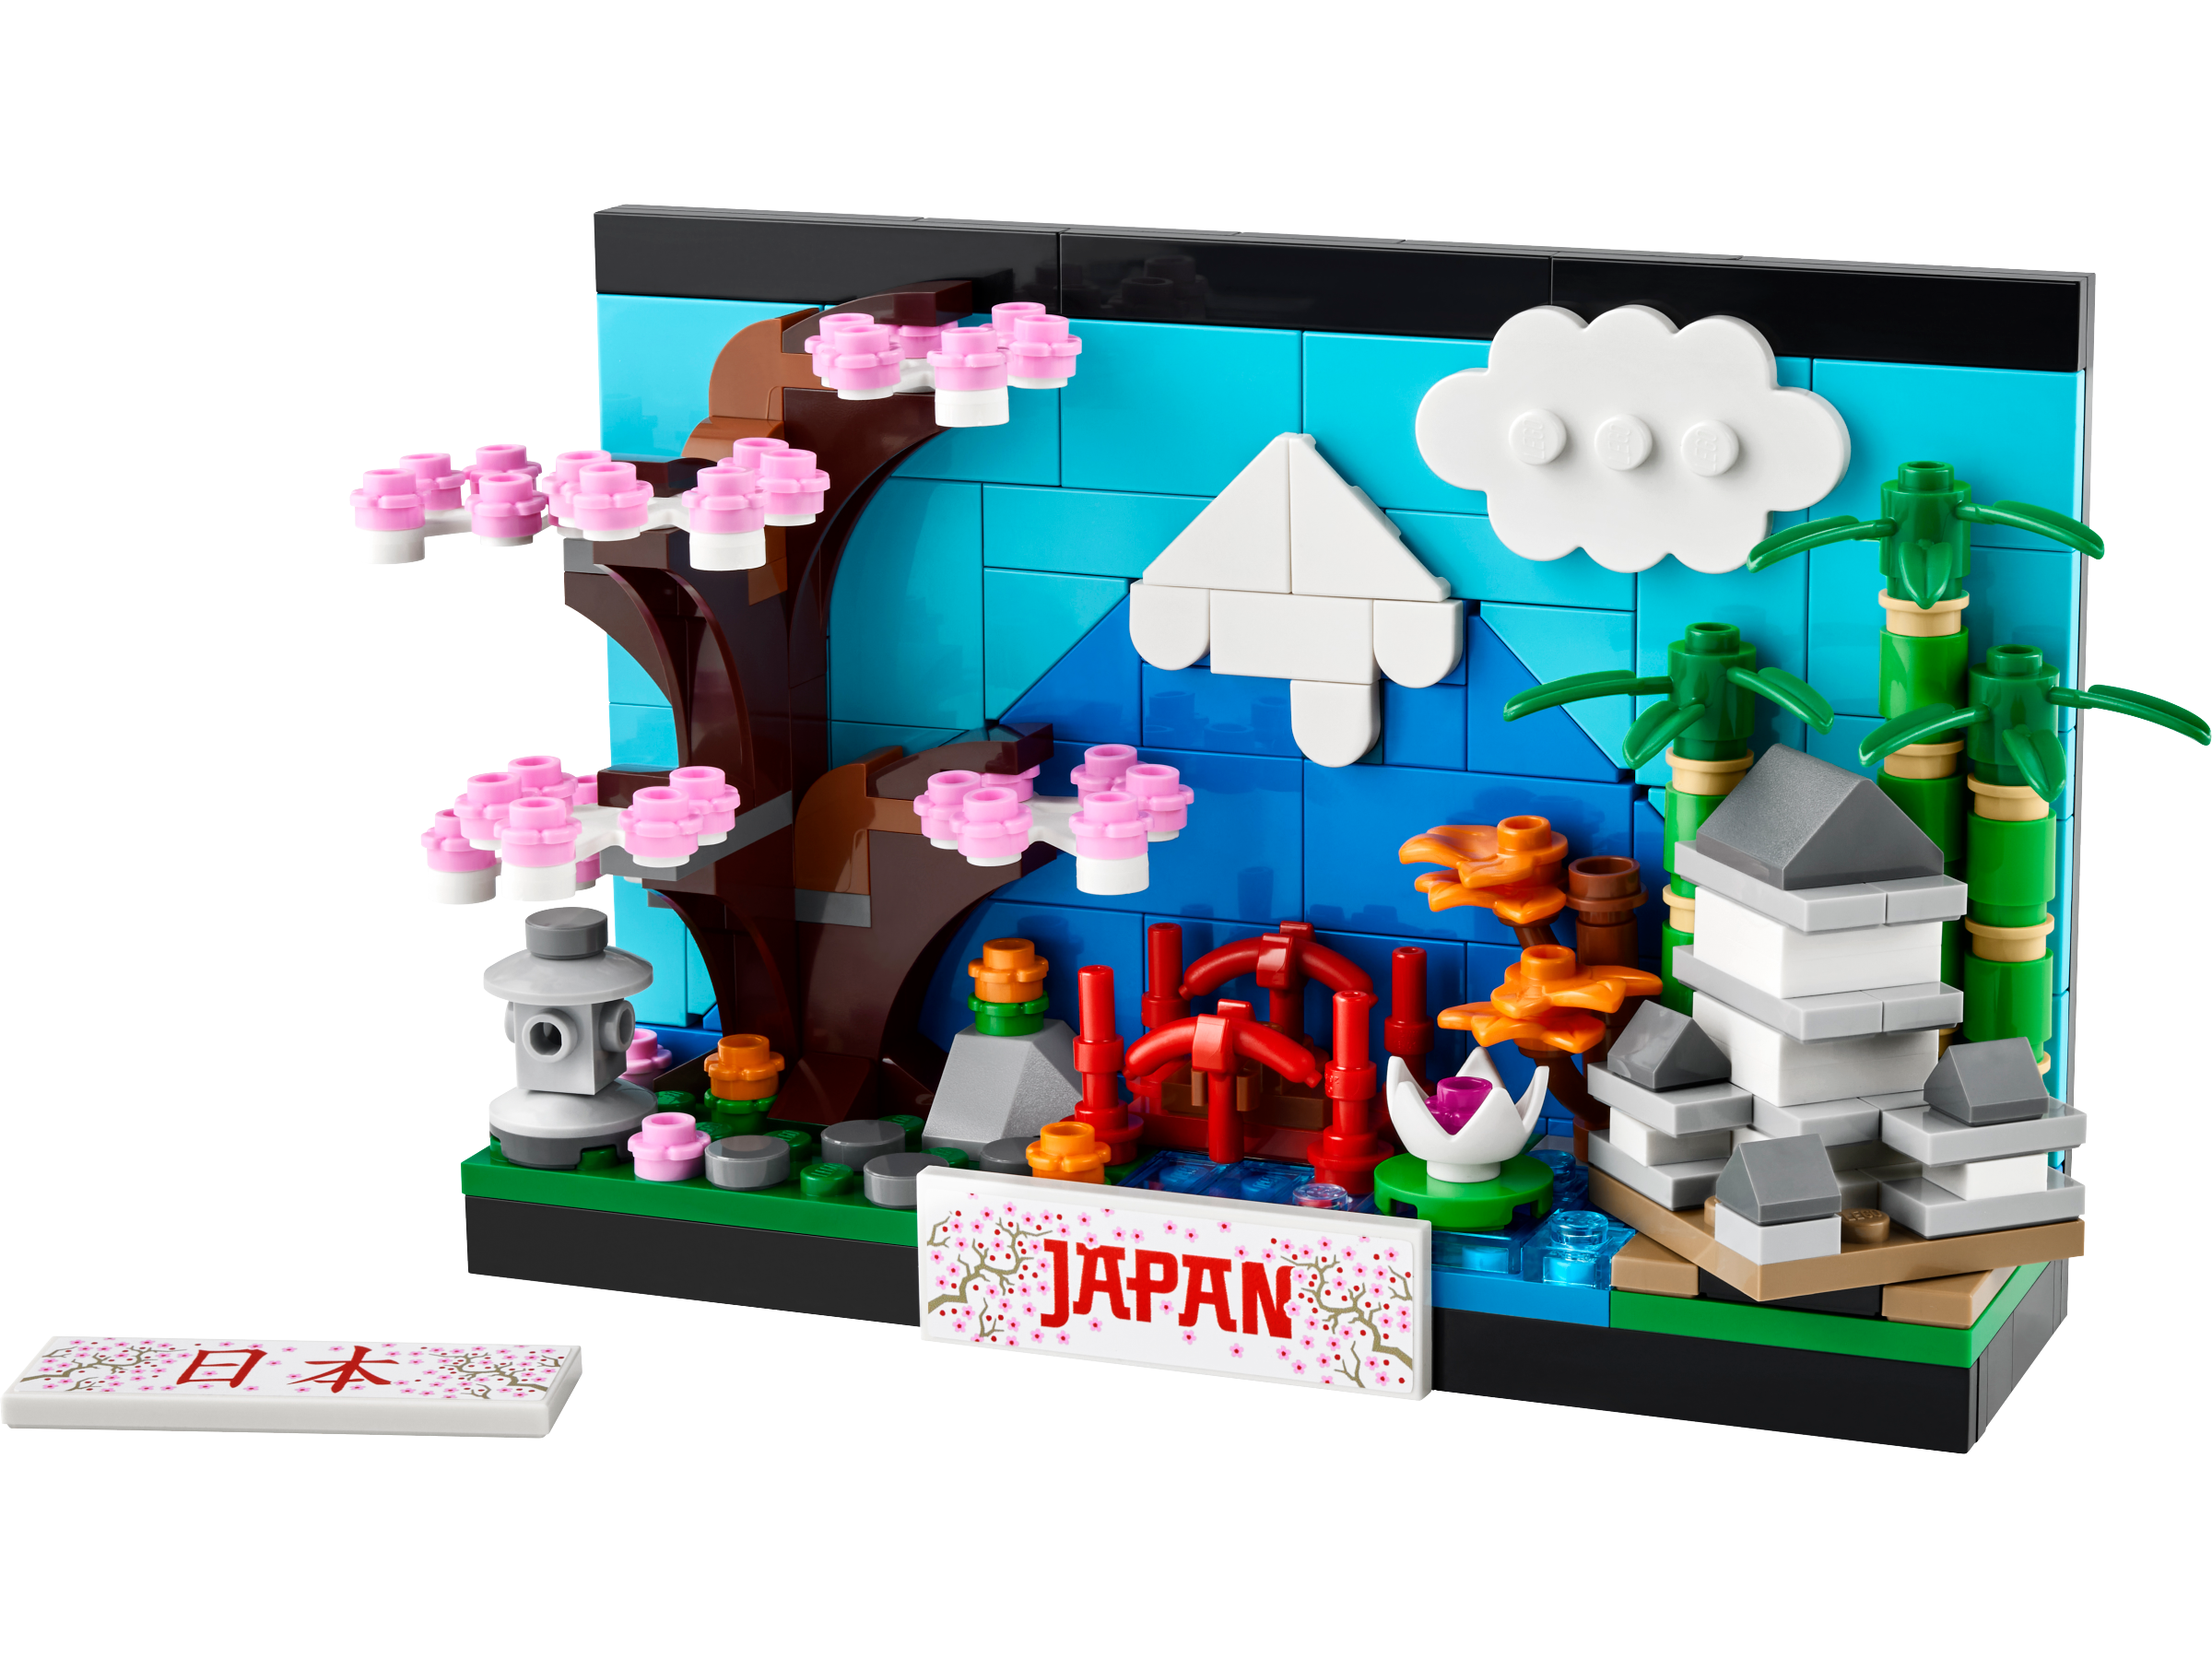 Brève Japan Expo 2019 - Choses vues #13 : Free Lug et les lego